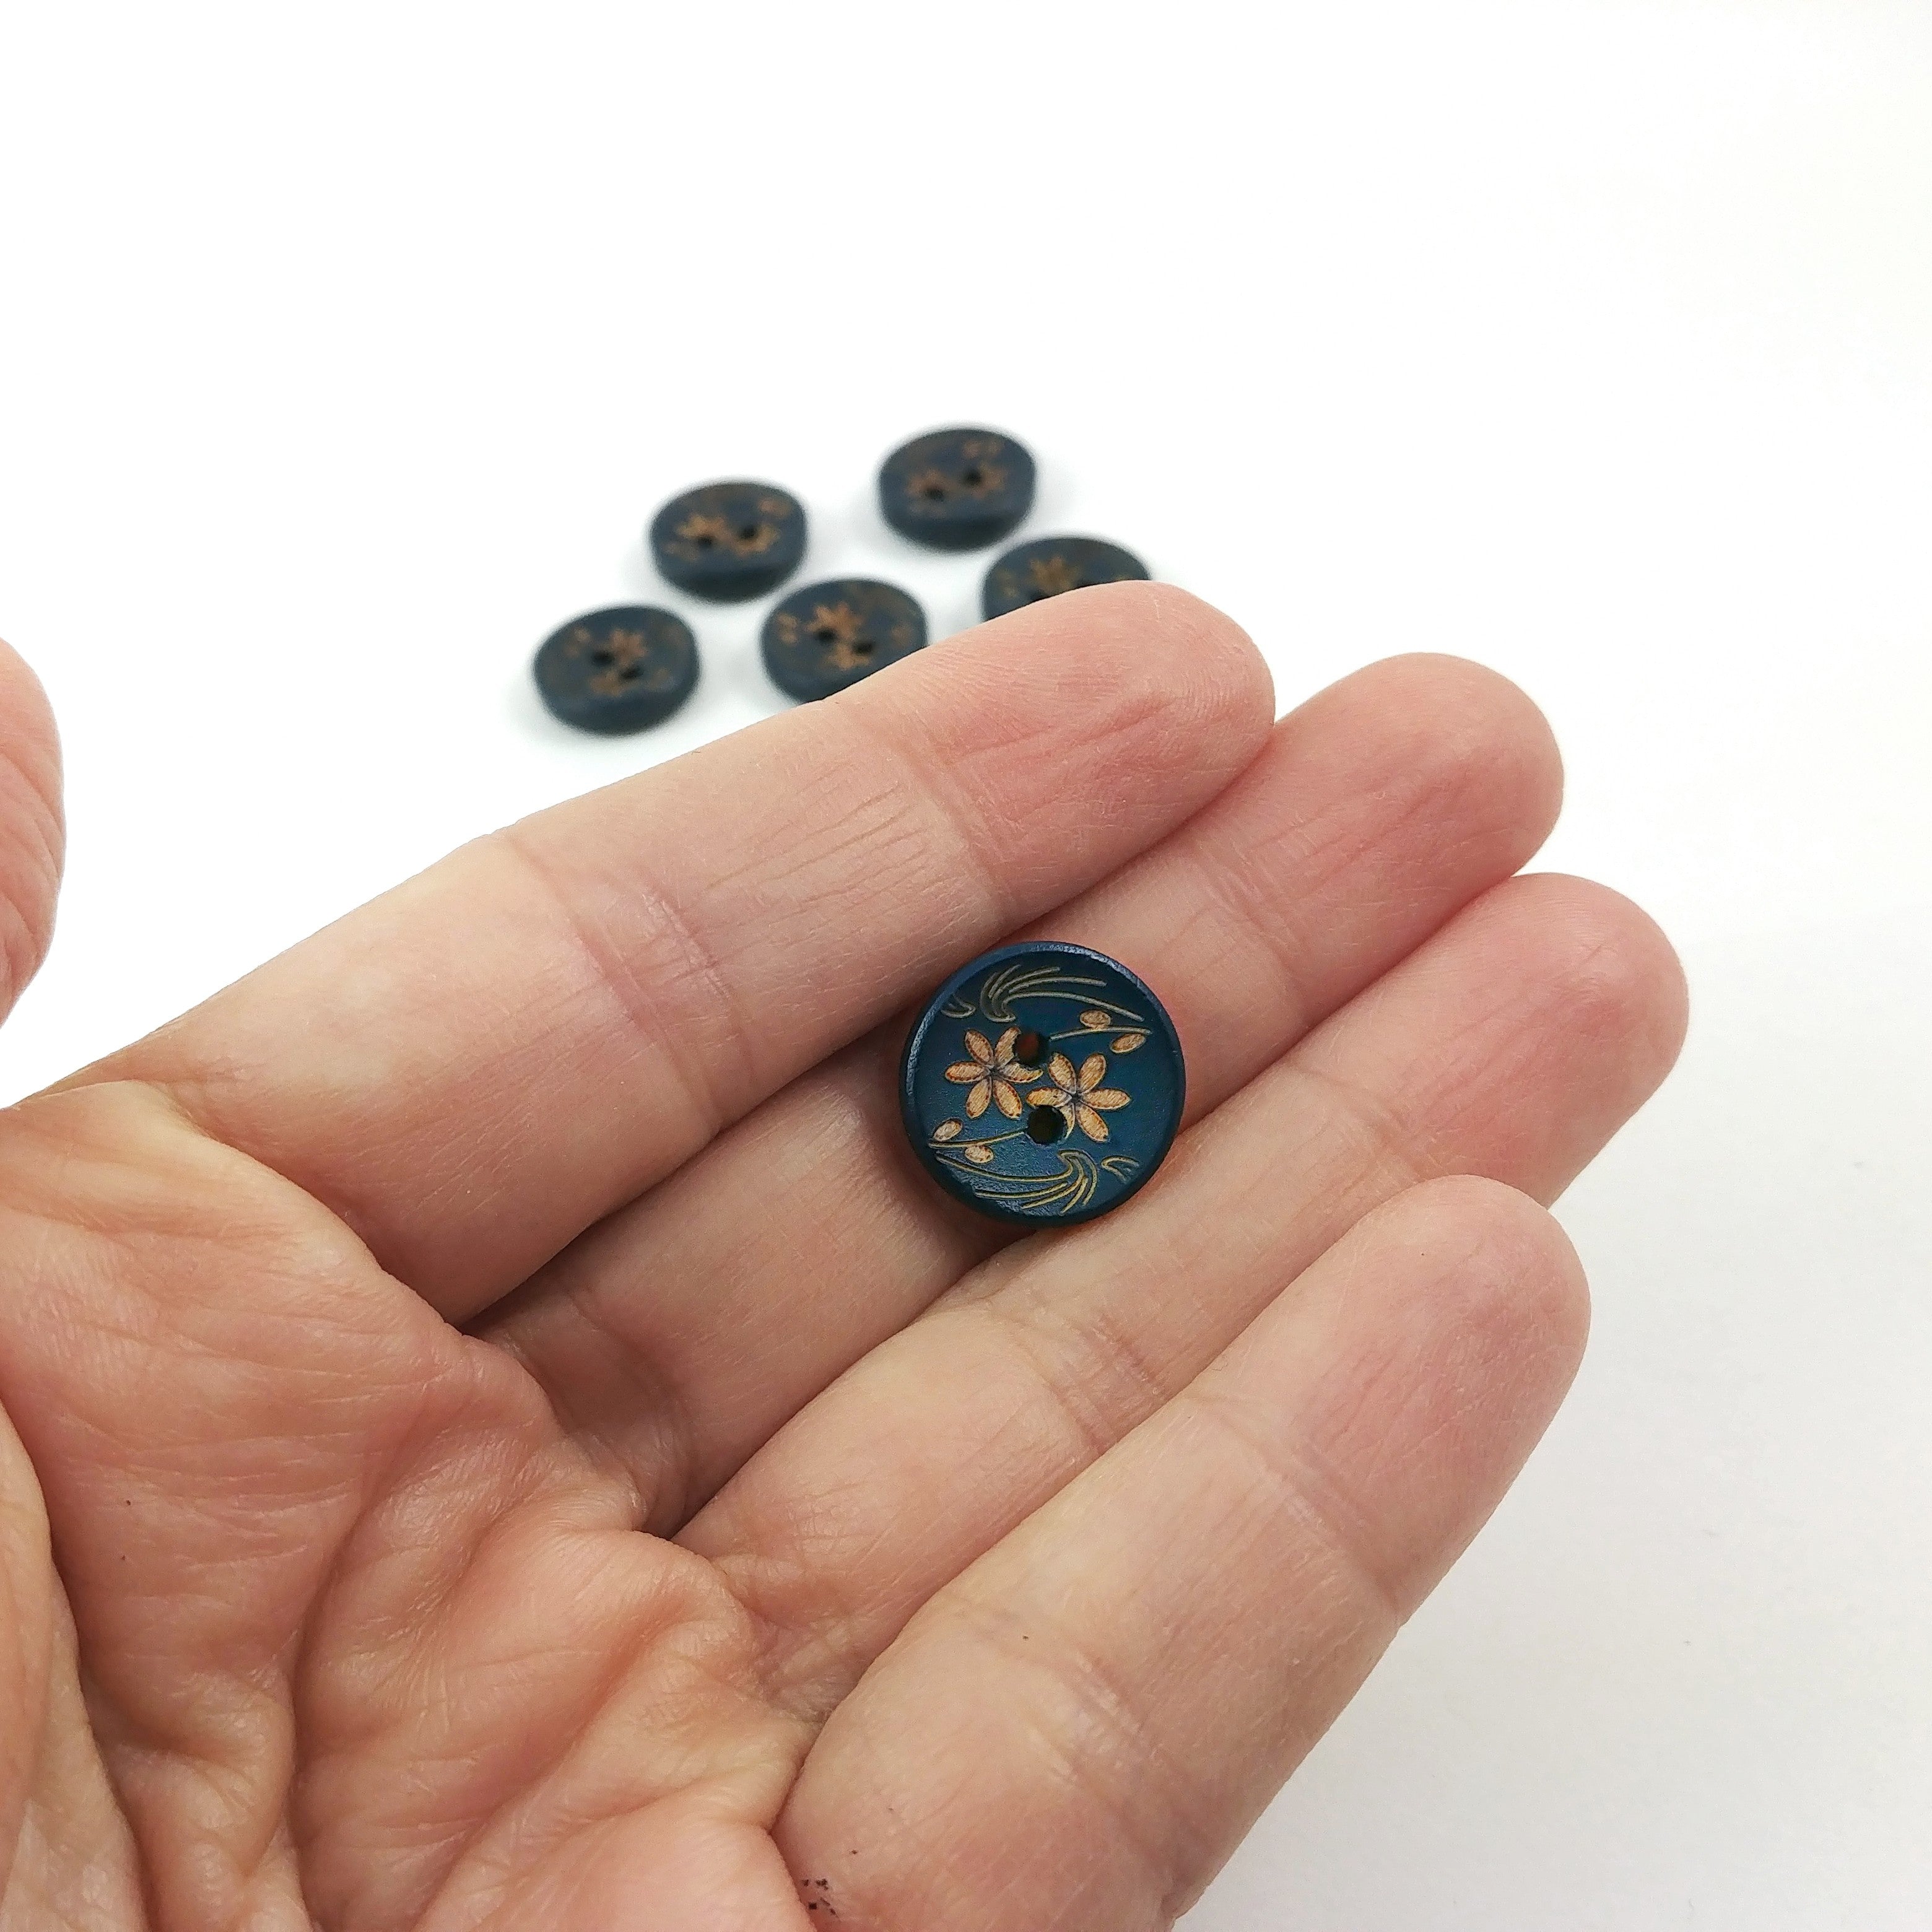 6 dark blue wooden button - brown flowers pattern 15mm